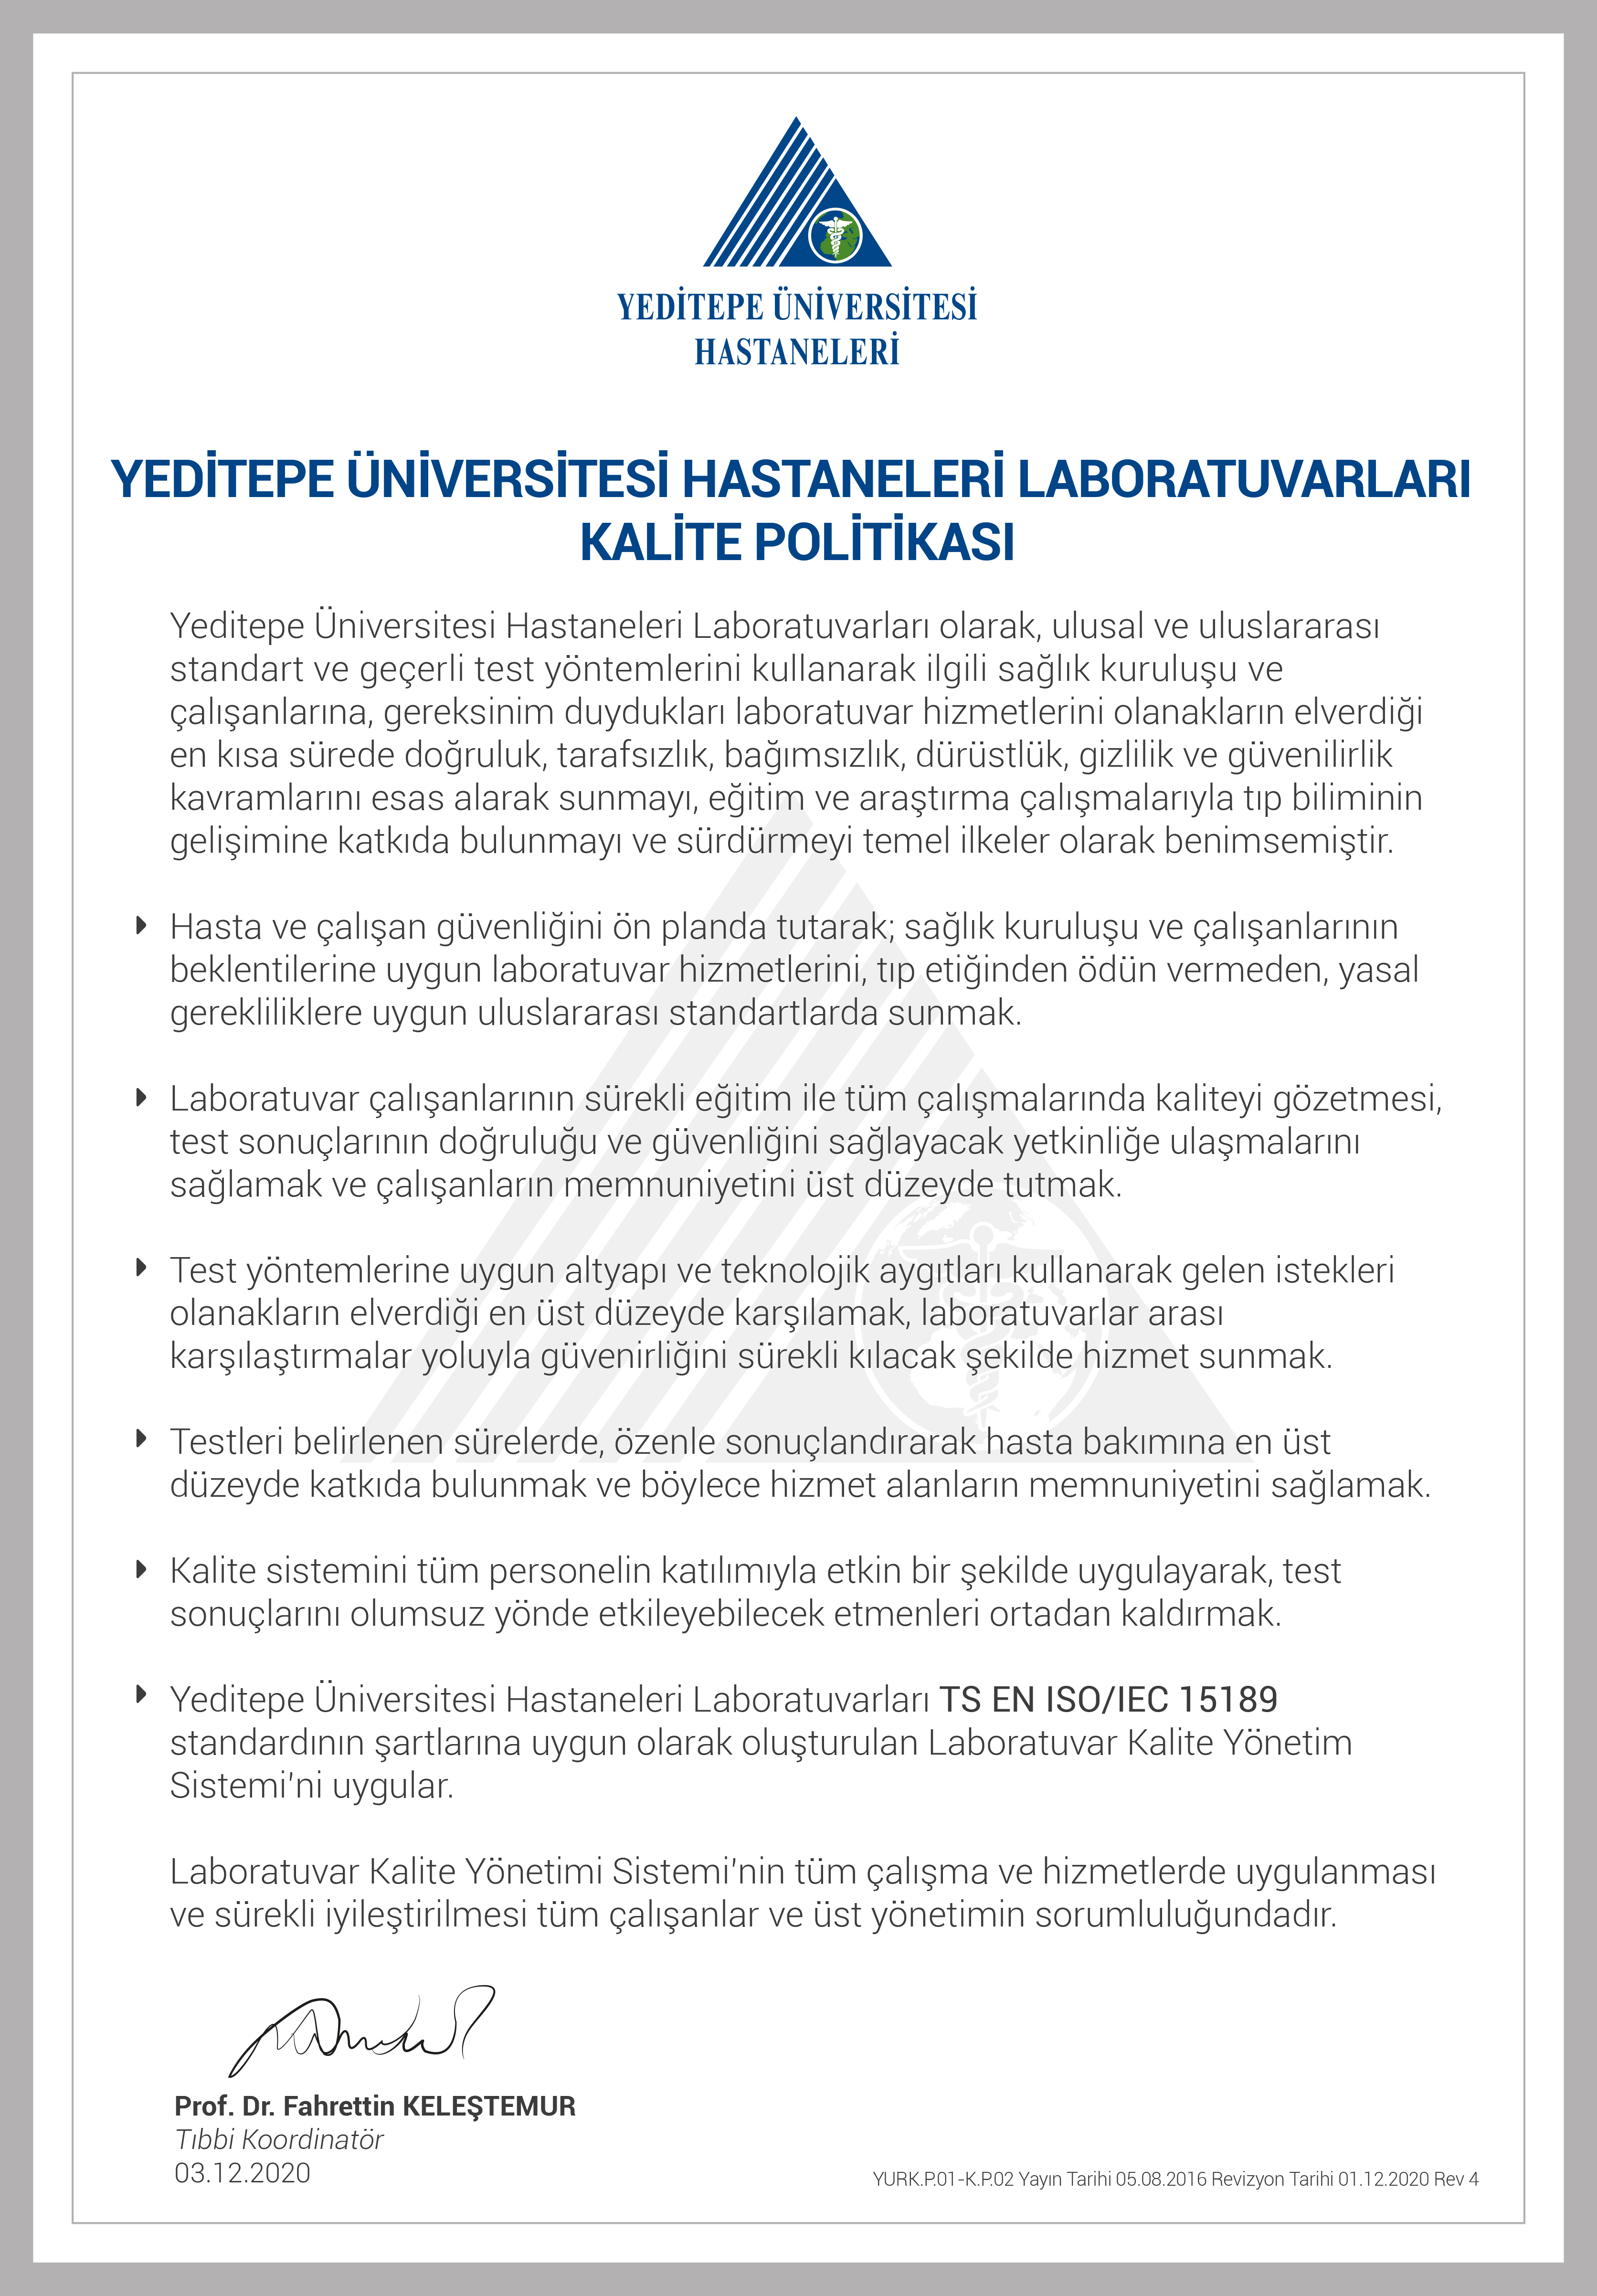 YURK.P.01-K.P.02 Yeditepe Üniversitesi Hastaneleri Laboratuvarları Kalite Politikası Rev 4.jpg